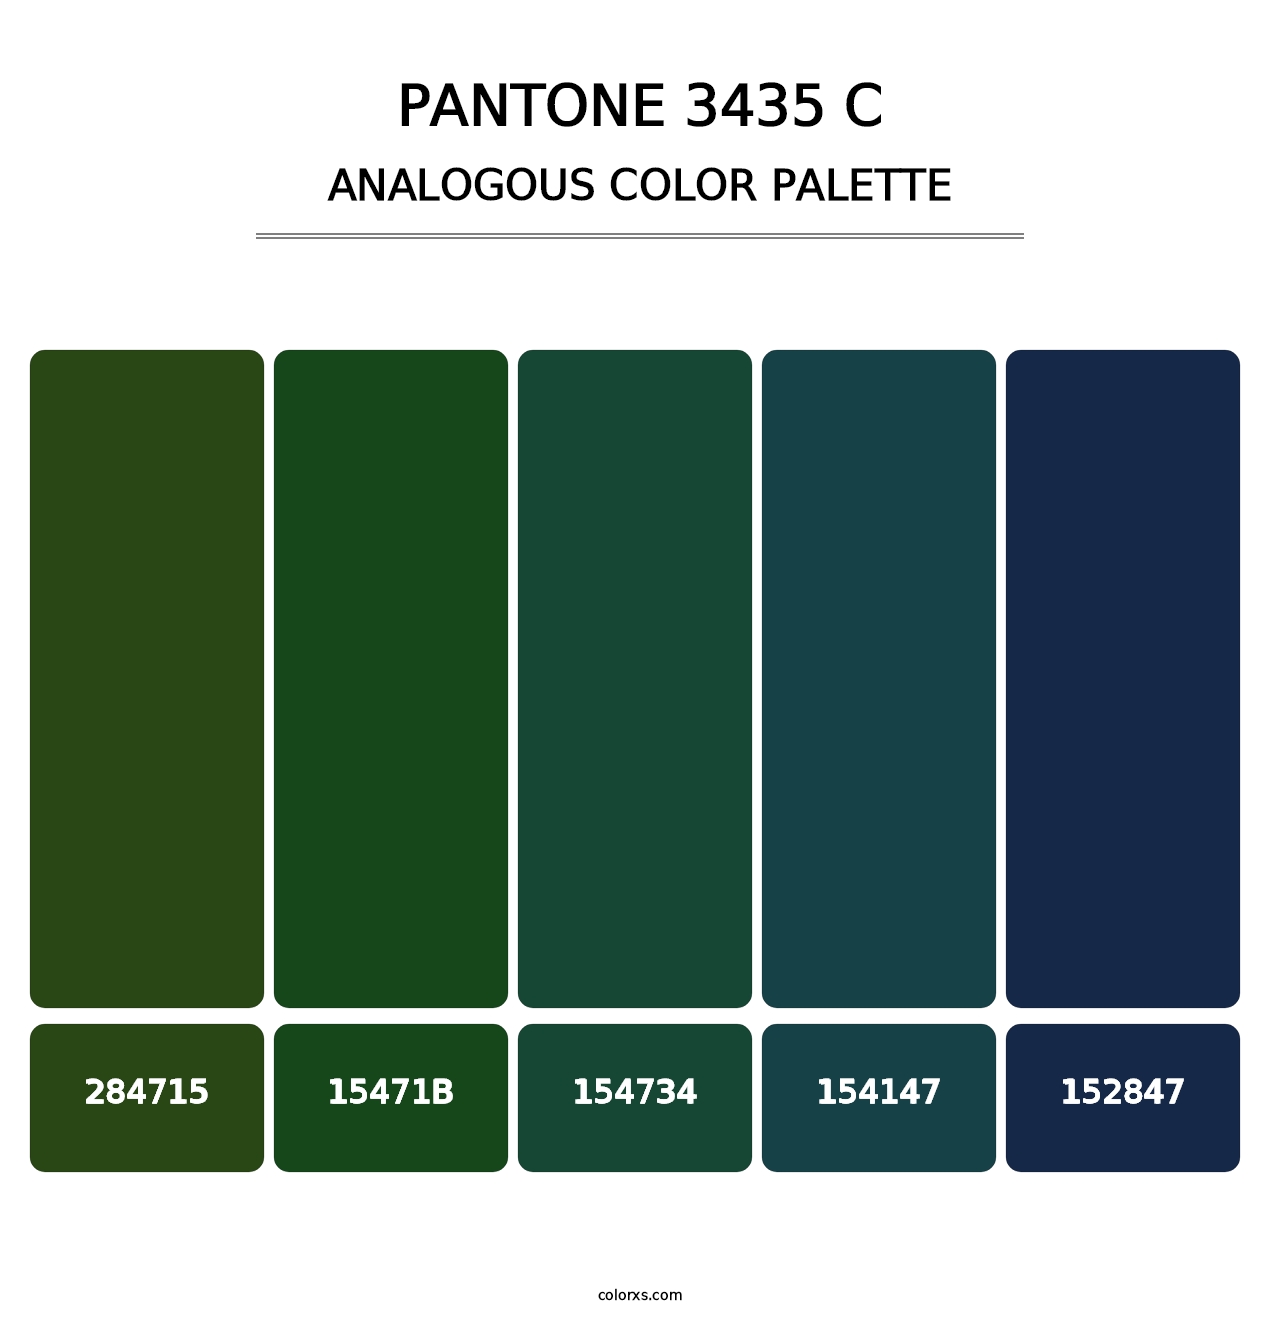 PANTONE 3435 C - Analogous Color Palette